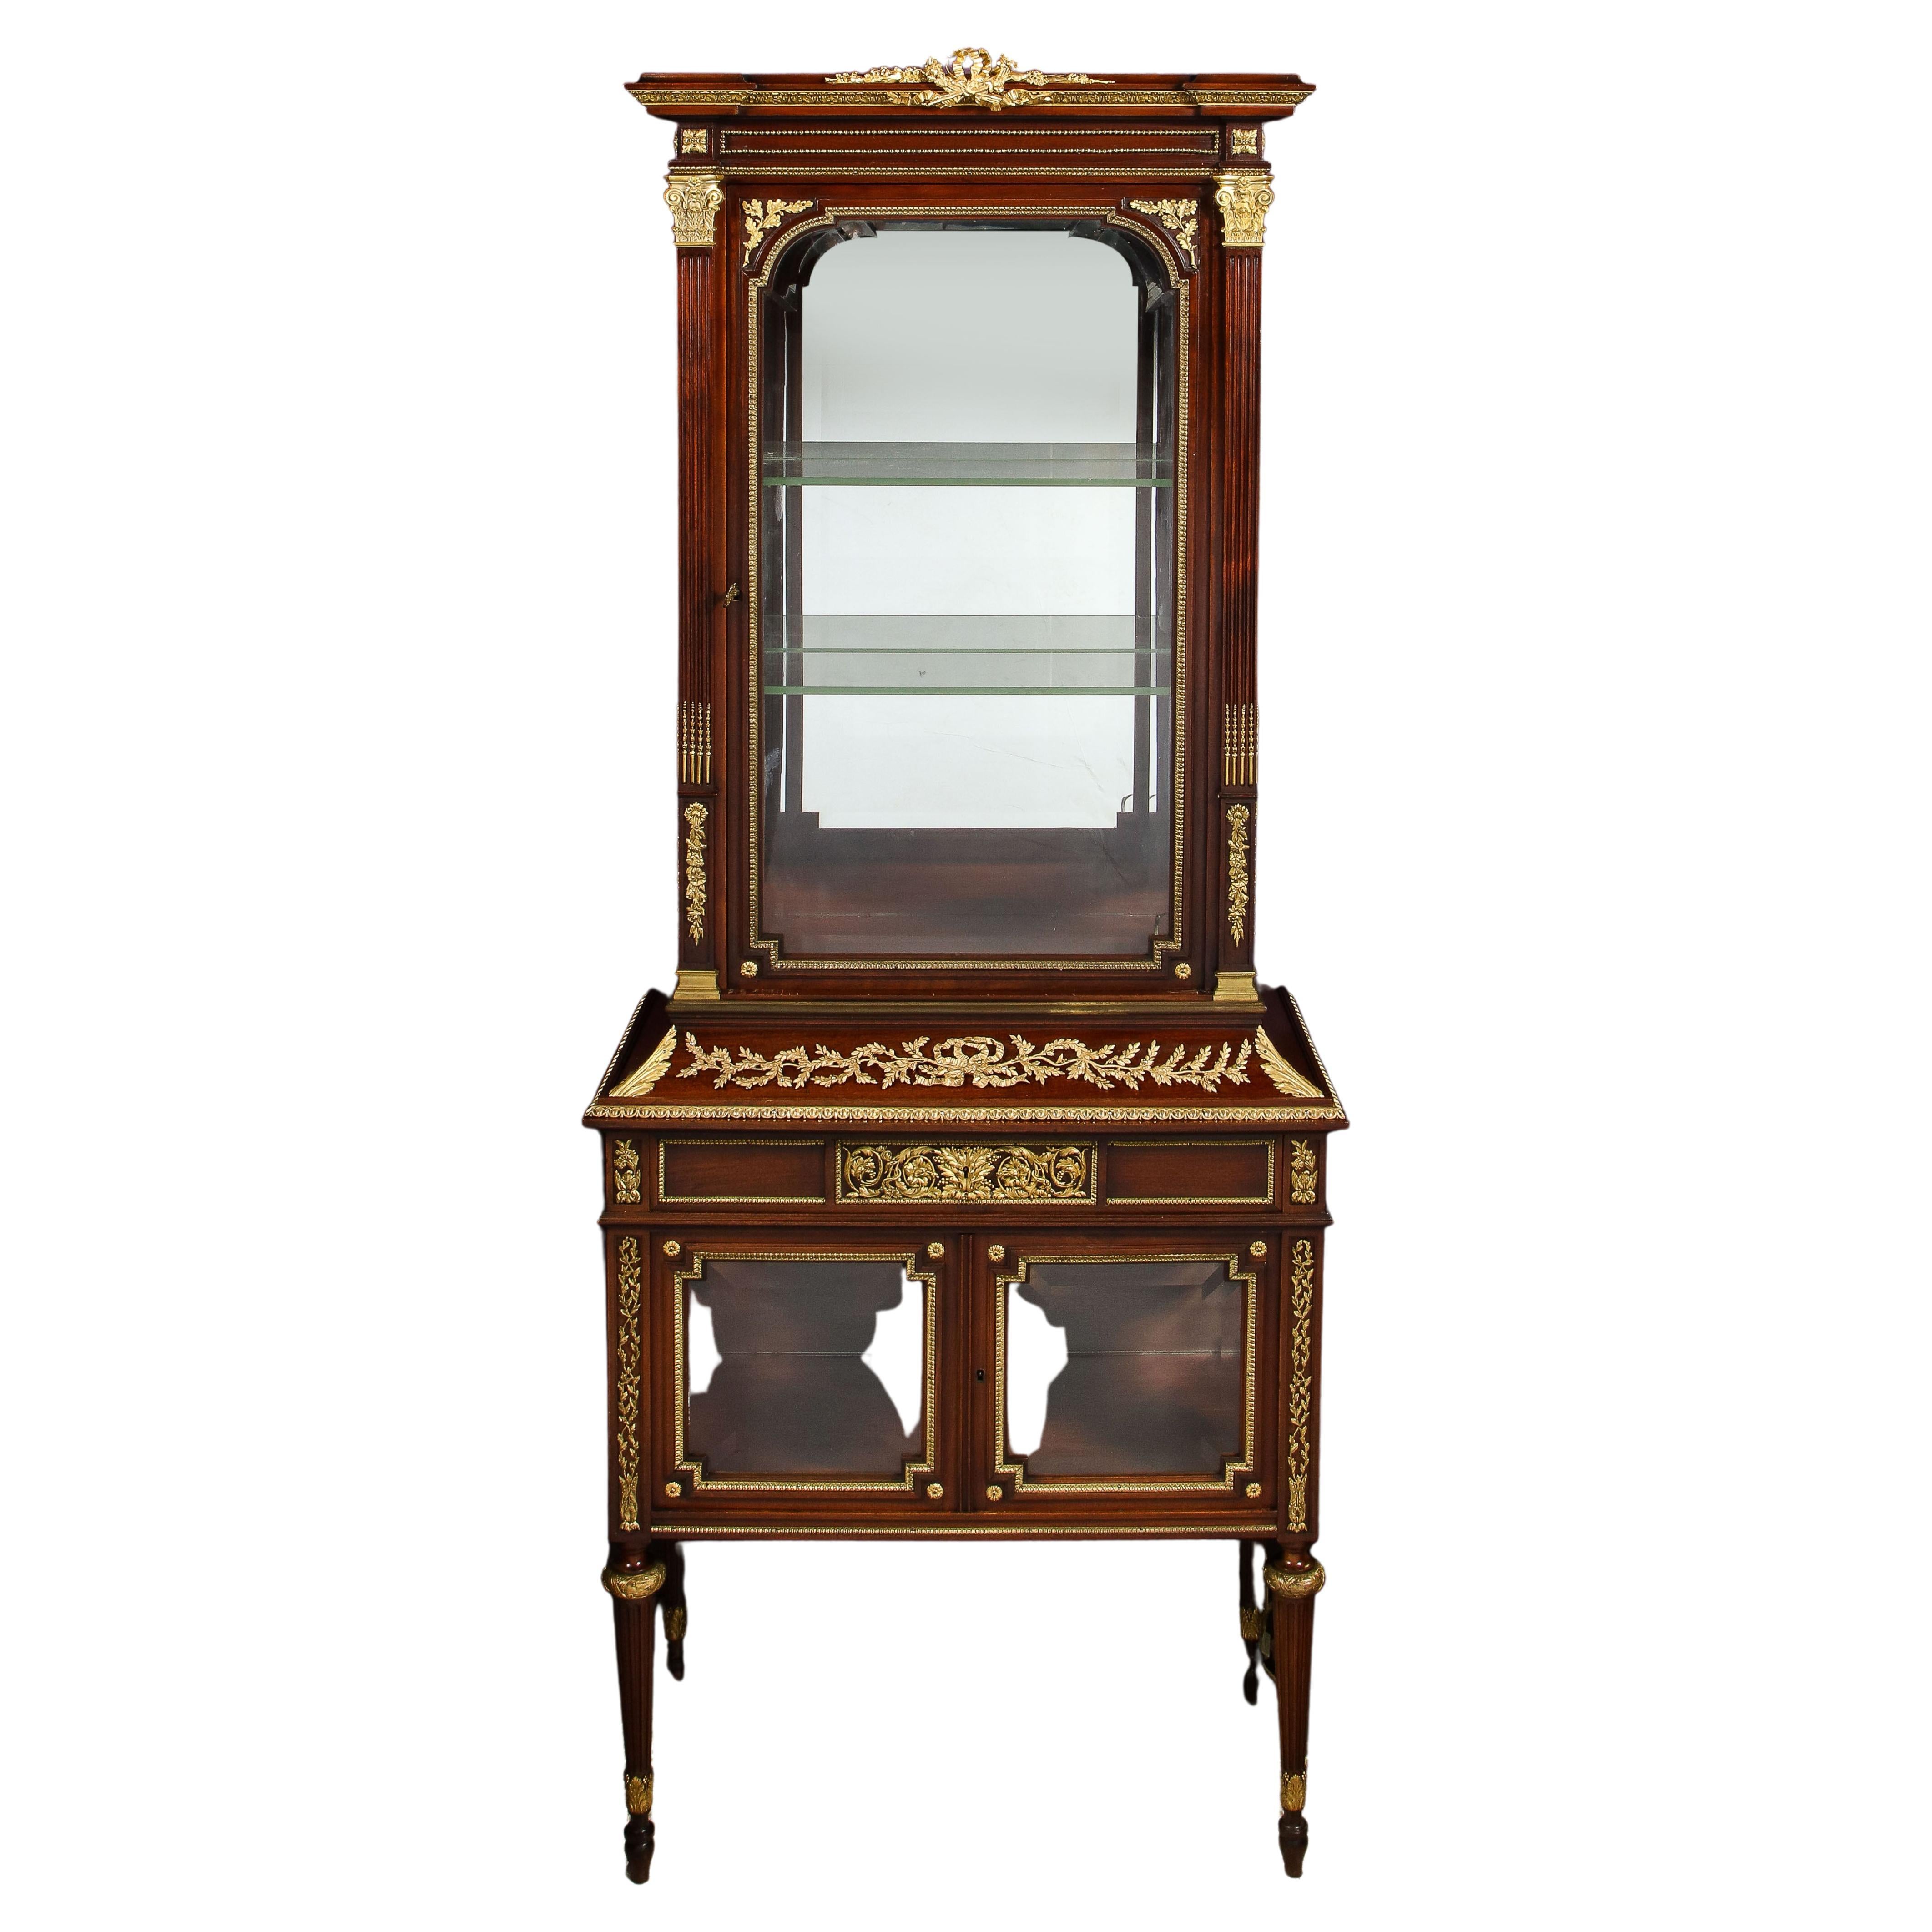 Un exquis cabinet de vitrine français en acajou et verre monté en Ormolu, attribué à Francois Linke, vers 1880.


Bien qu'il ne soit pas signé, la qualité des montures en bronze doré, en particulier les colonnes corinthiennes, ainsi que le